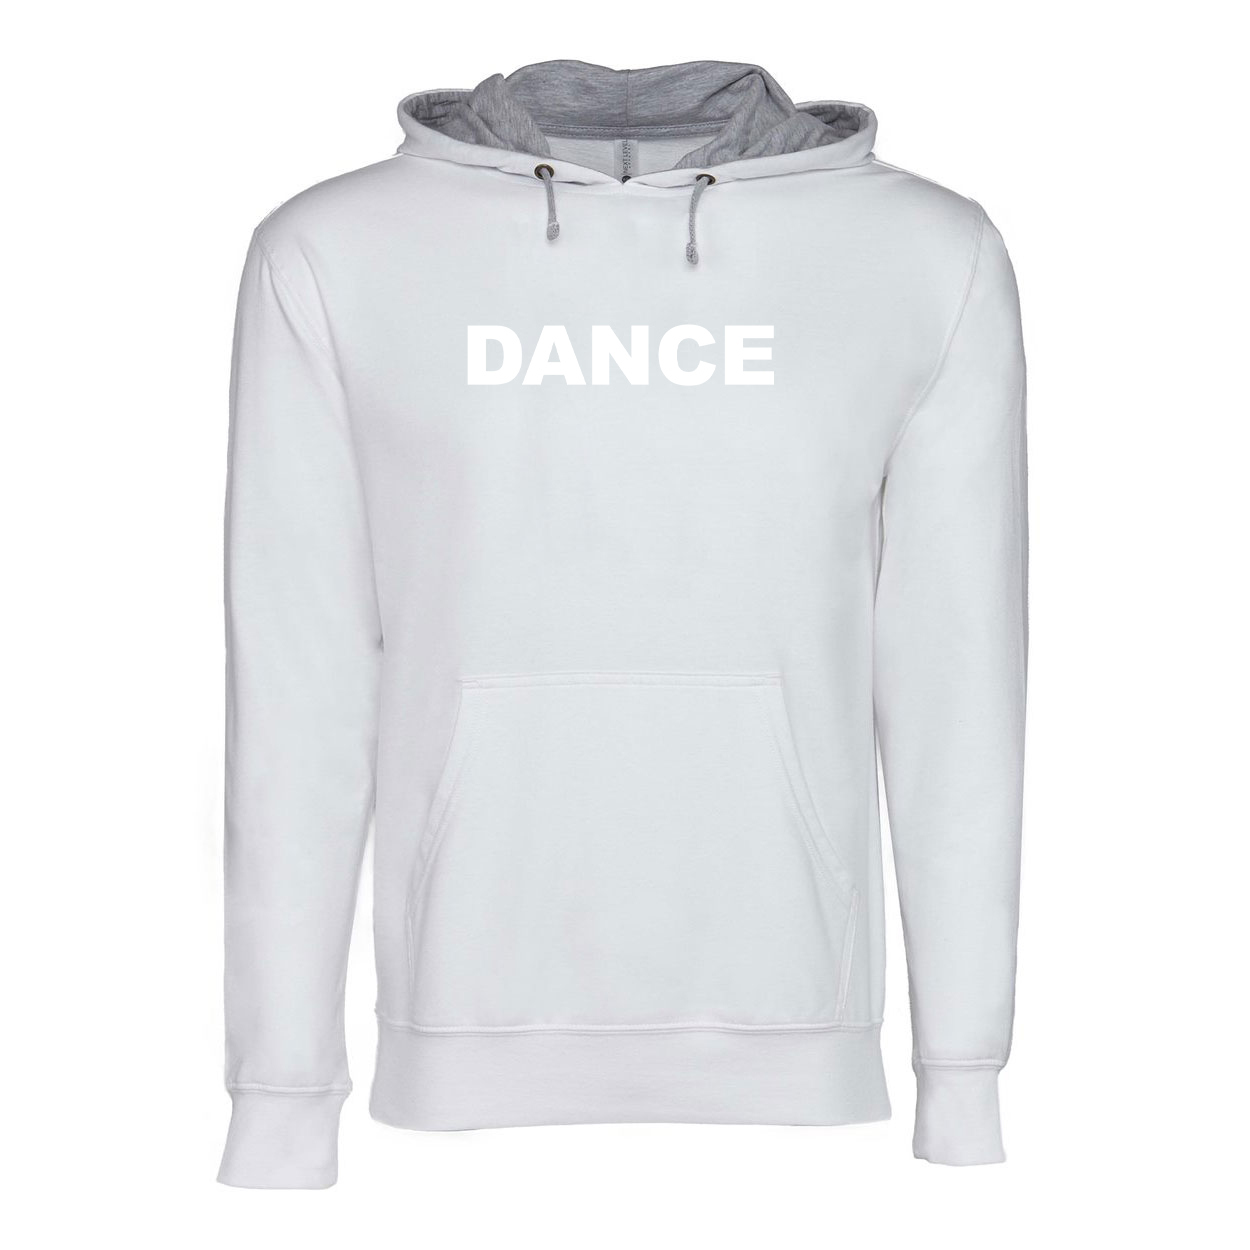 Dance Brand Logo Classic Lightweight Sweatshirt White/Heather Gray 